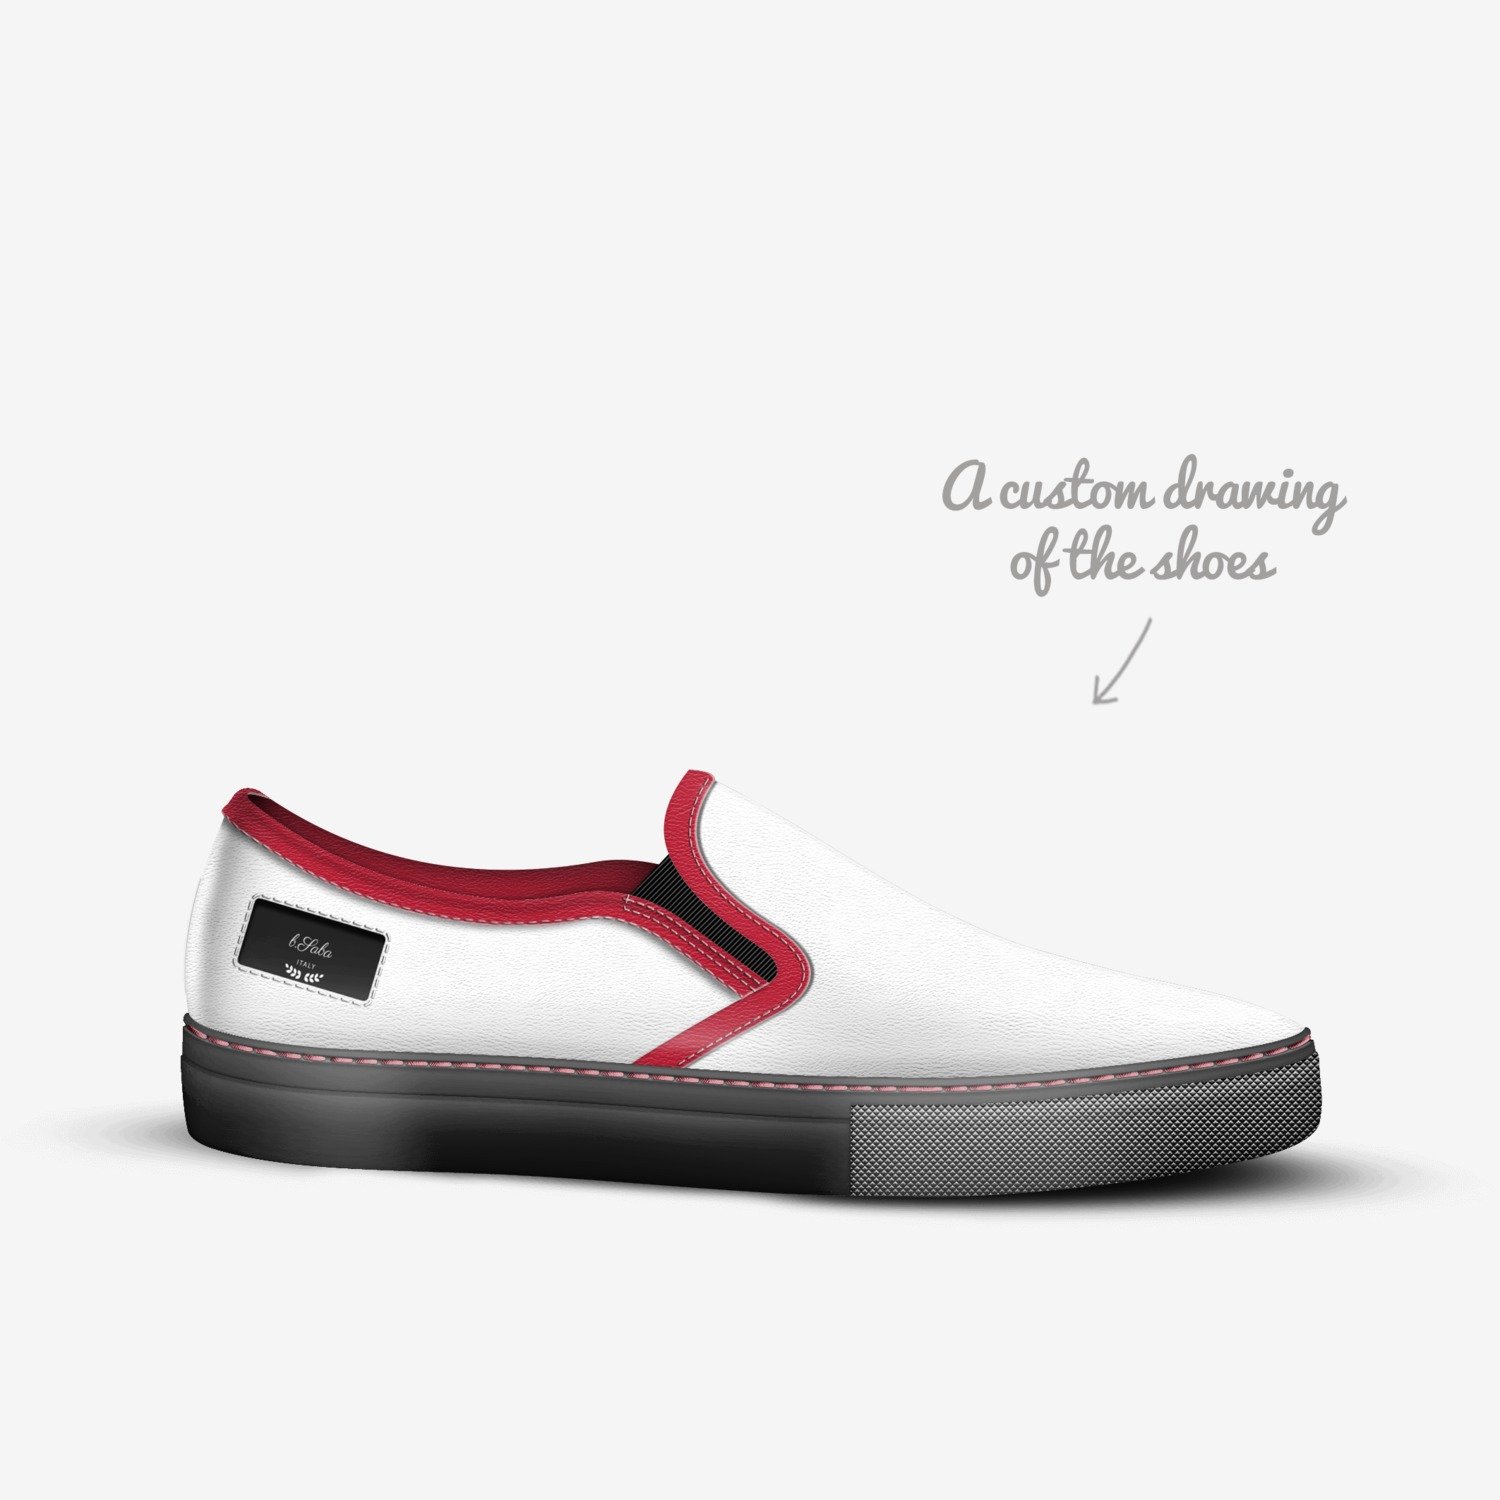 Credencial Vibrar Subordinar b.Saba | A Custom Shoe concept by Bryan Saba Scroggins